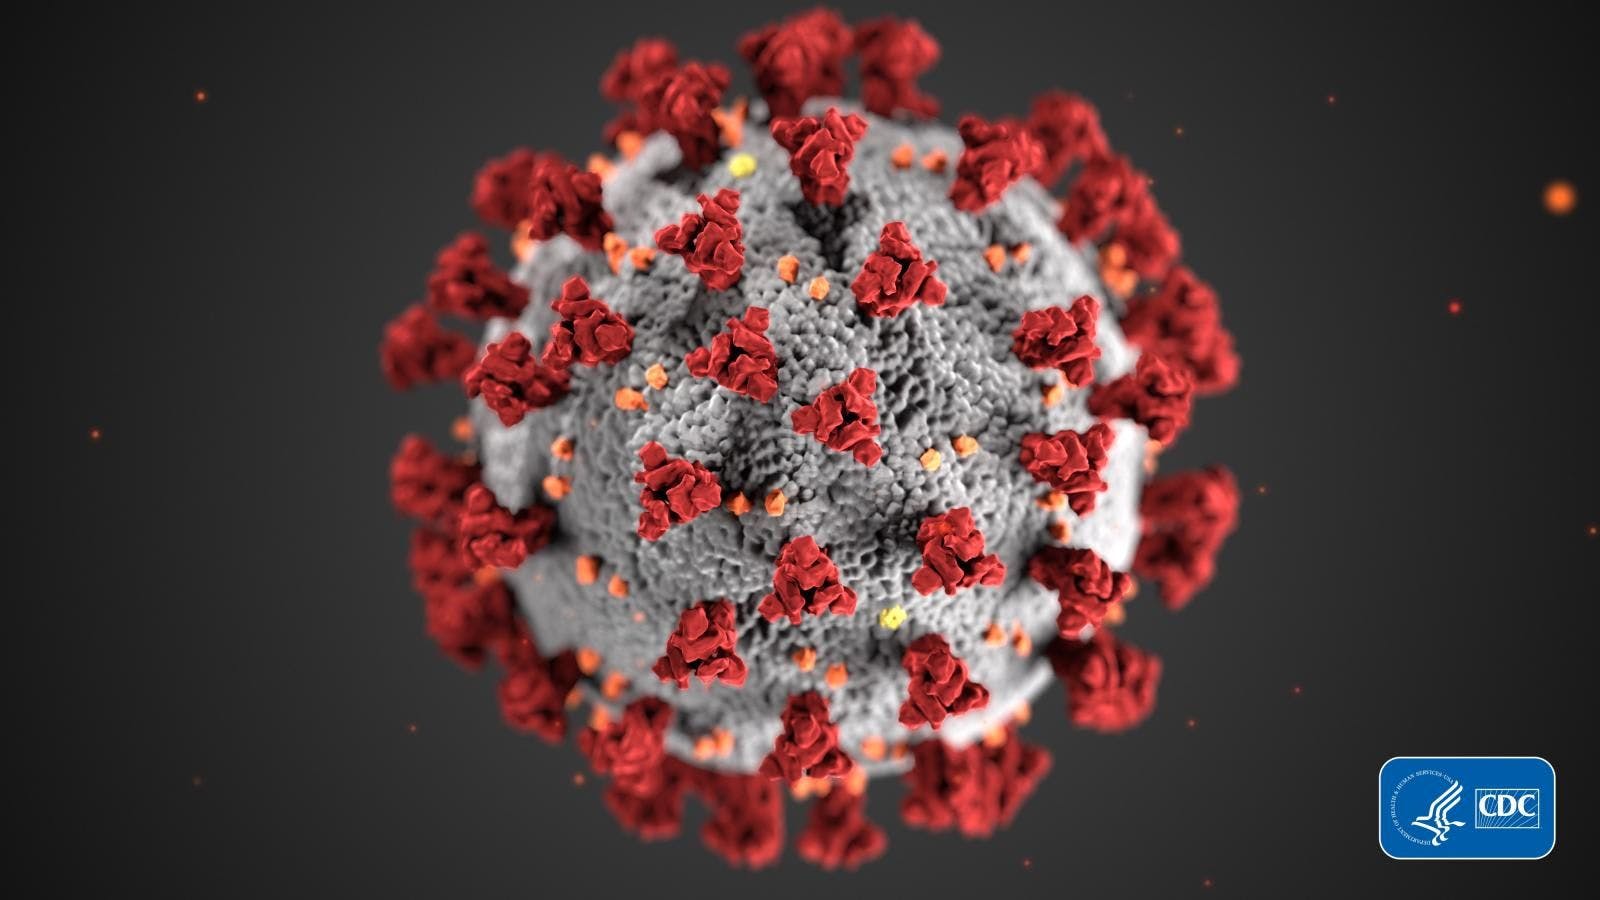 Investigators Rush to Find Treatments for Novel Coronavirus